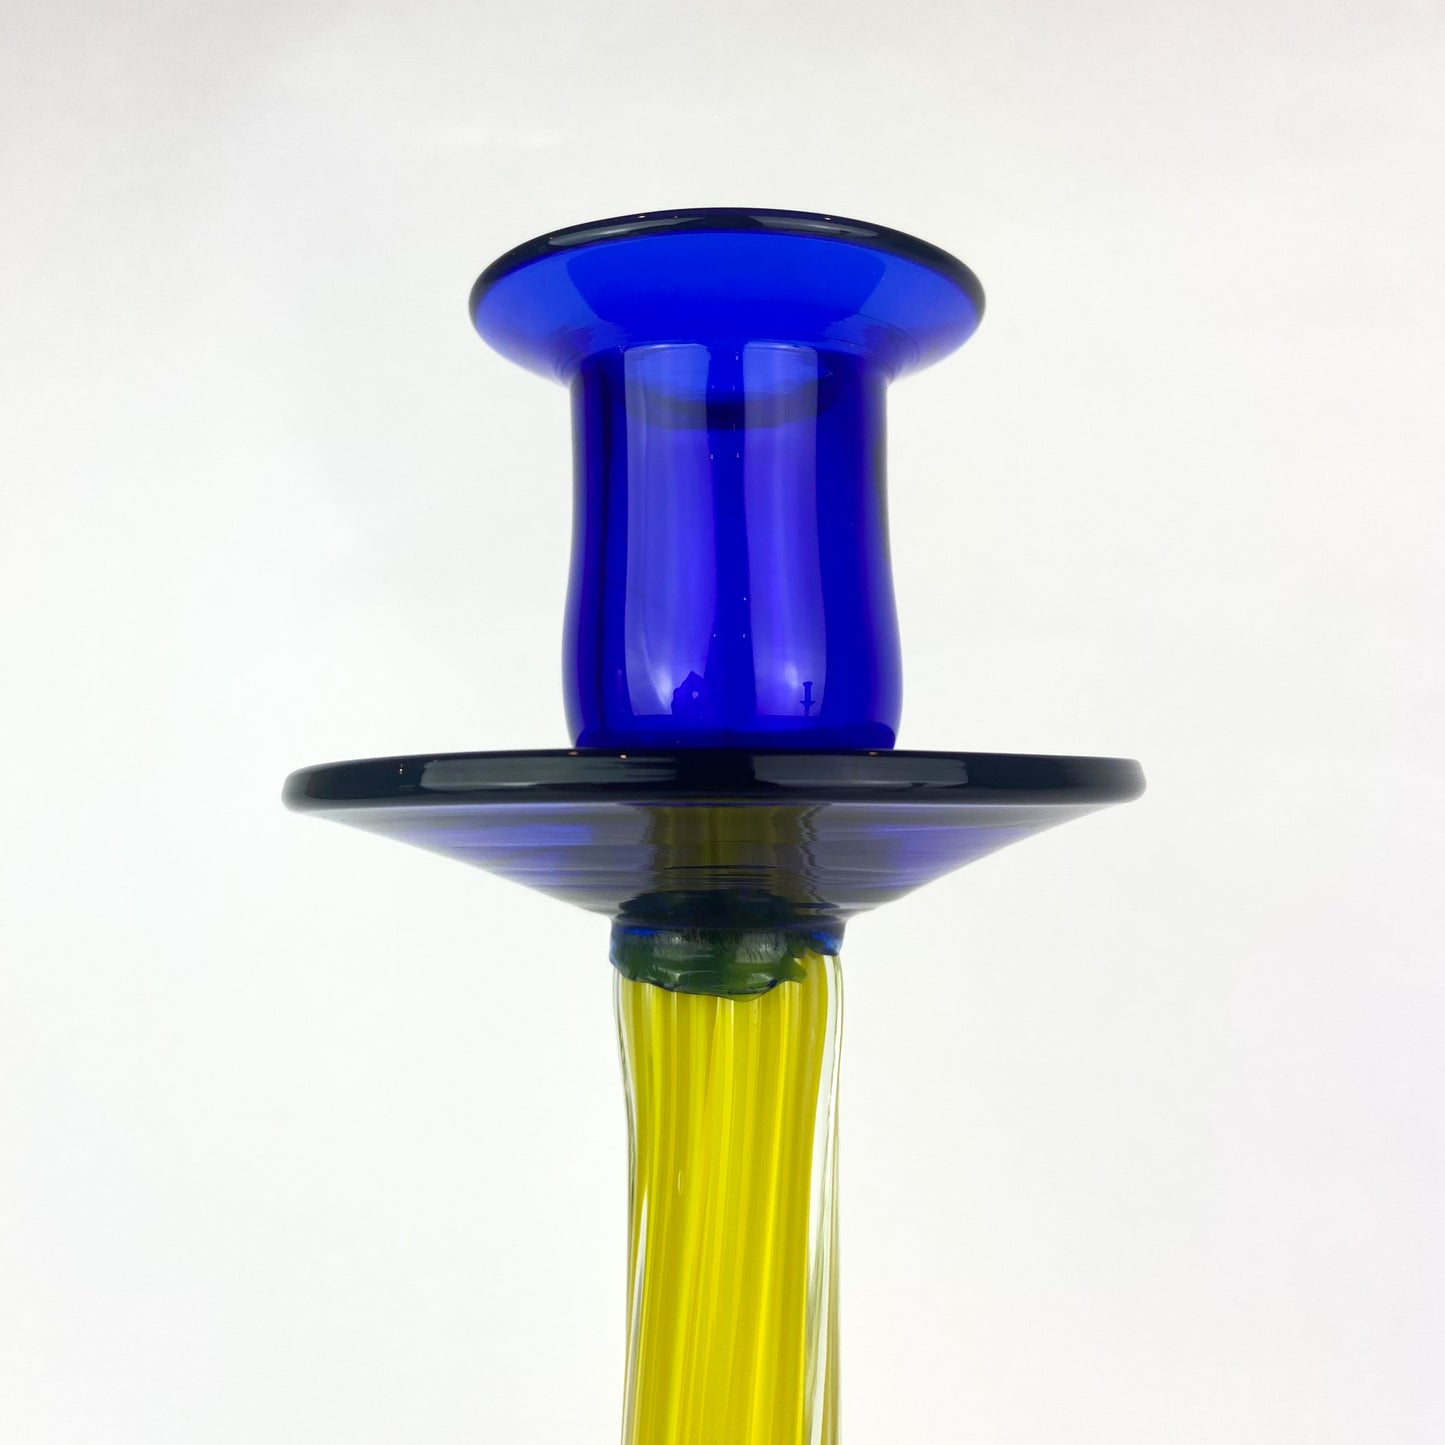 Pair of Cobalt + Yellow Art Glass Candlesticks #O671